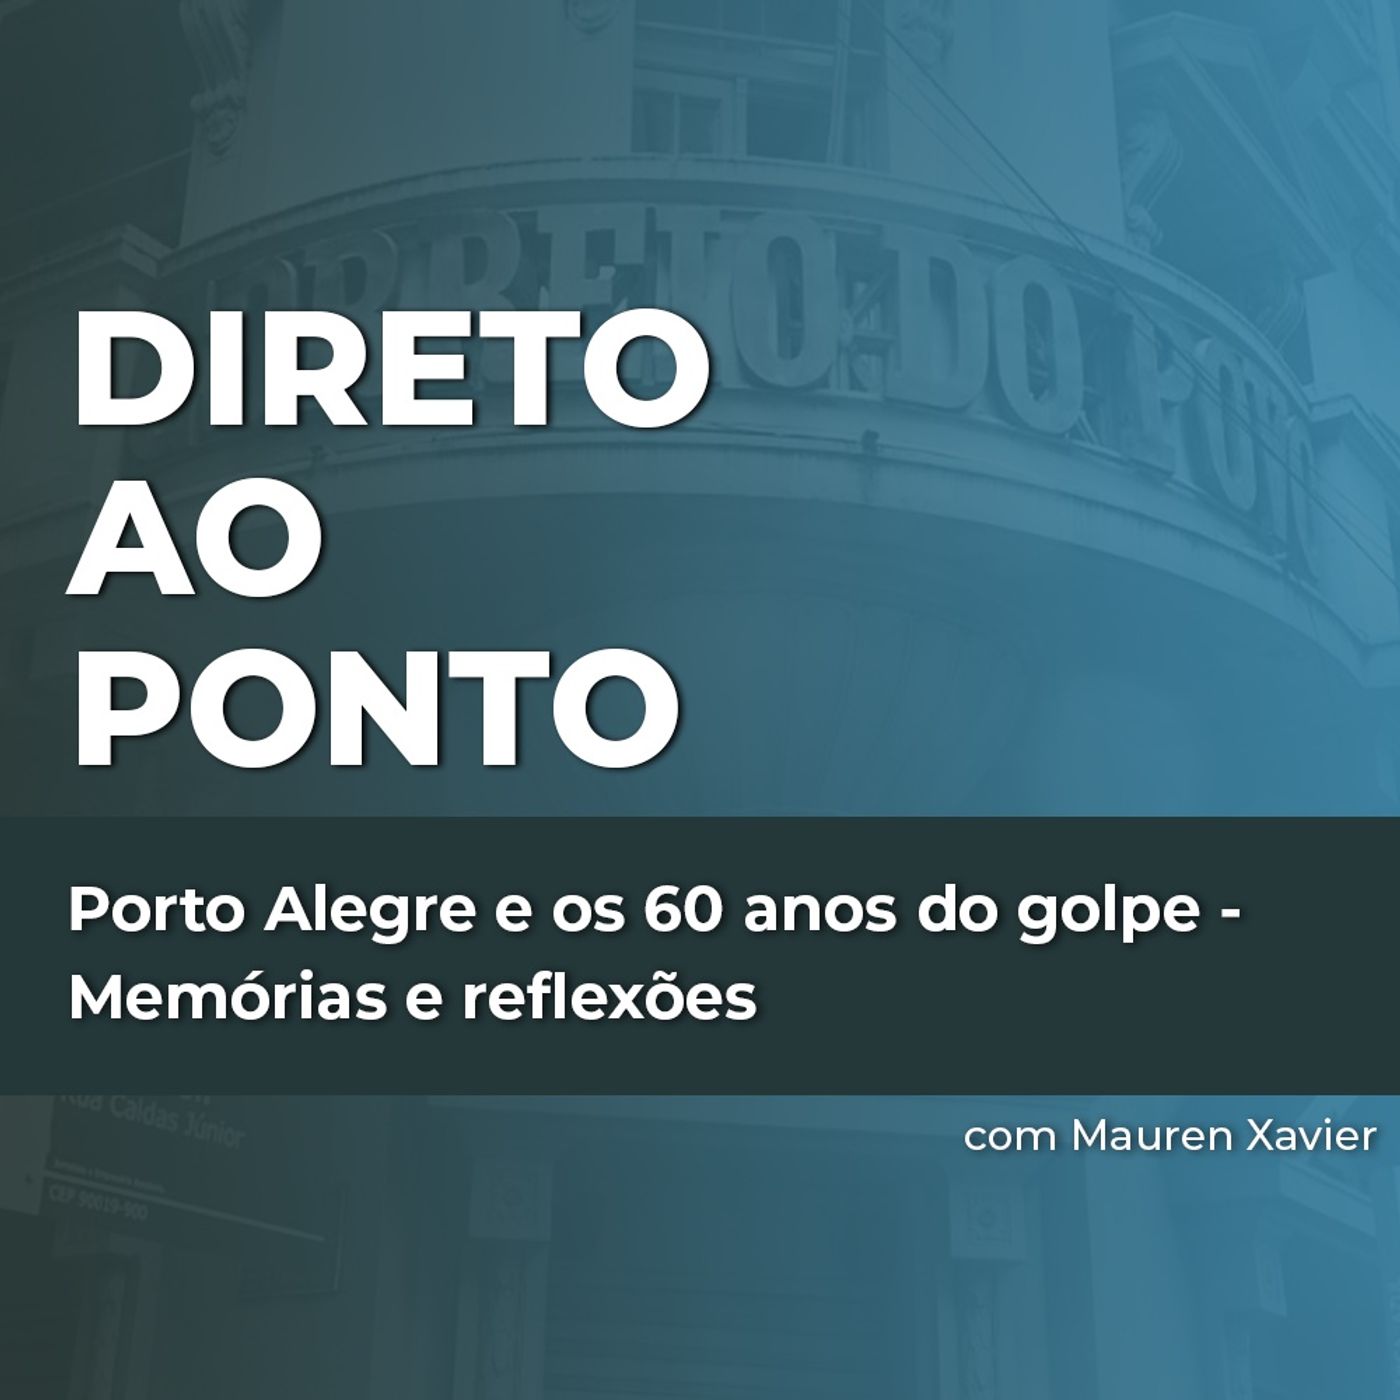 Porto Alegre e os 60 anos do golpe - Memórias e reflexões